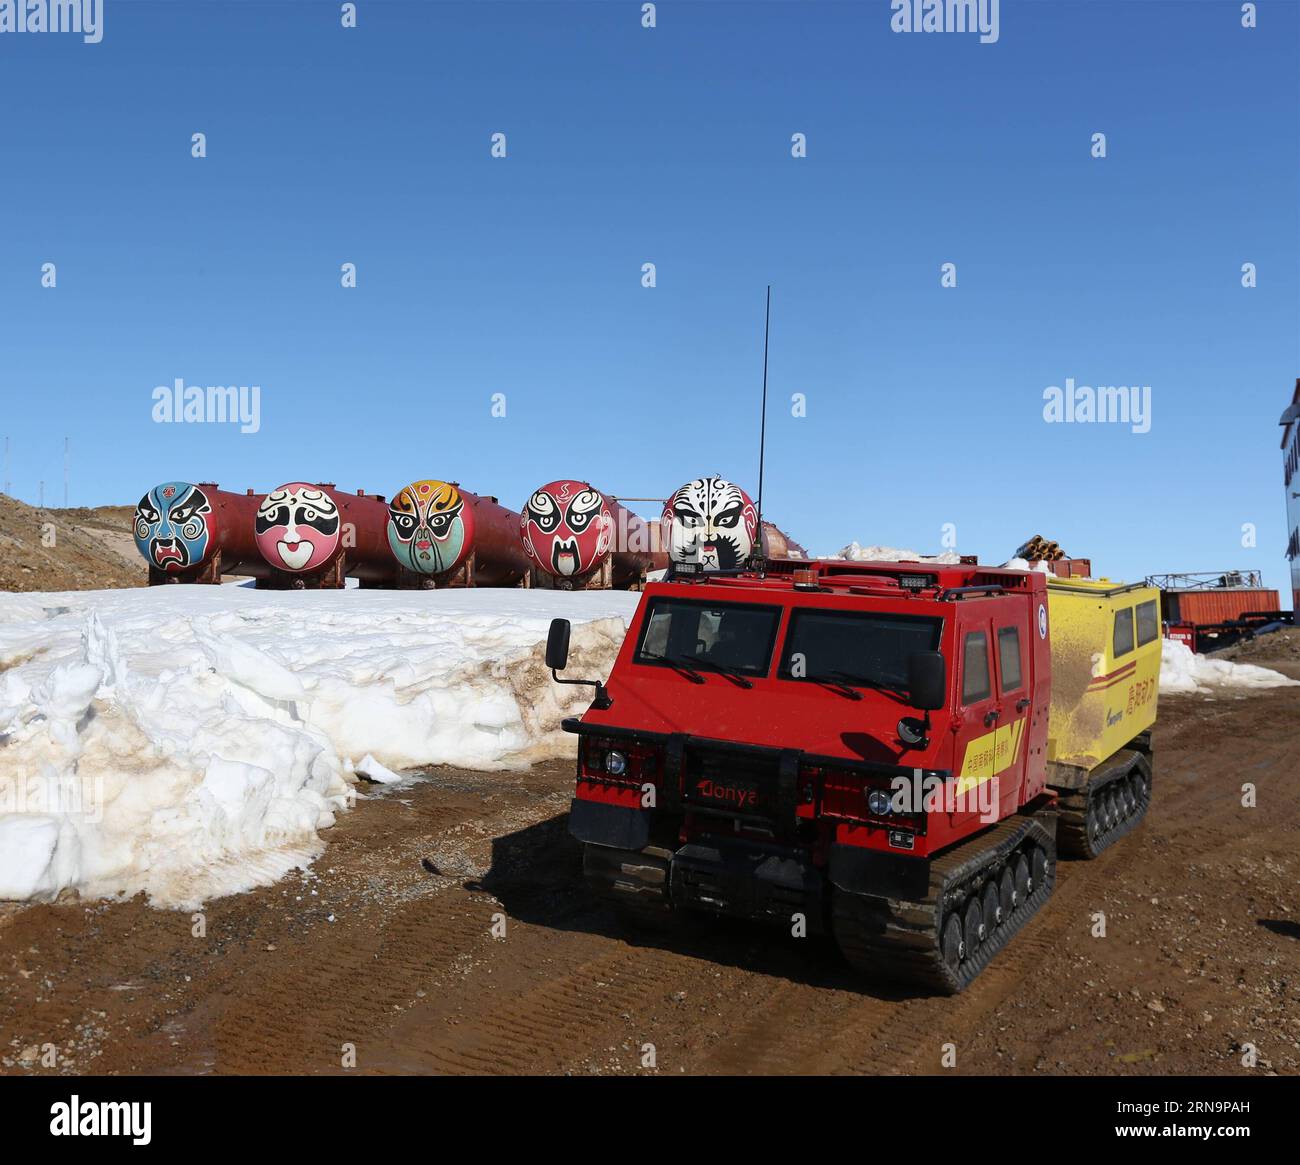 La foto scattata il 14 dicembre 2015 mostra il primo veicolo fuoristrada della Cina presso la stazione antartica di Zhongshan, una base di ricerca scientifica cinese in Antartide. Il primo veicolo fuoristrada della Cina è stato recentemente sottoposto a un test sul campo vicino alla stazione antartica di Zhongshan. Il veicolo anfibio ha un'eccellente manovrabilità e può correre in campi di neve, deserti, spiagge e regioni montuose a una velocità massima di 60 chilometri all'ora e 5 chilometri all'ora in acqua. ) (wyo) ANTARTIDE-CHINA-ZHONGSHAN STATION-32ND EXPEDITION-FIRST ATV ZhuxJichai PUBLICATIONxNOTxINxCHN foto scattata IL 14 dicembre 2015 mostra C. Foto Stock